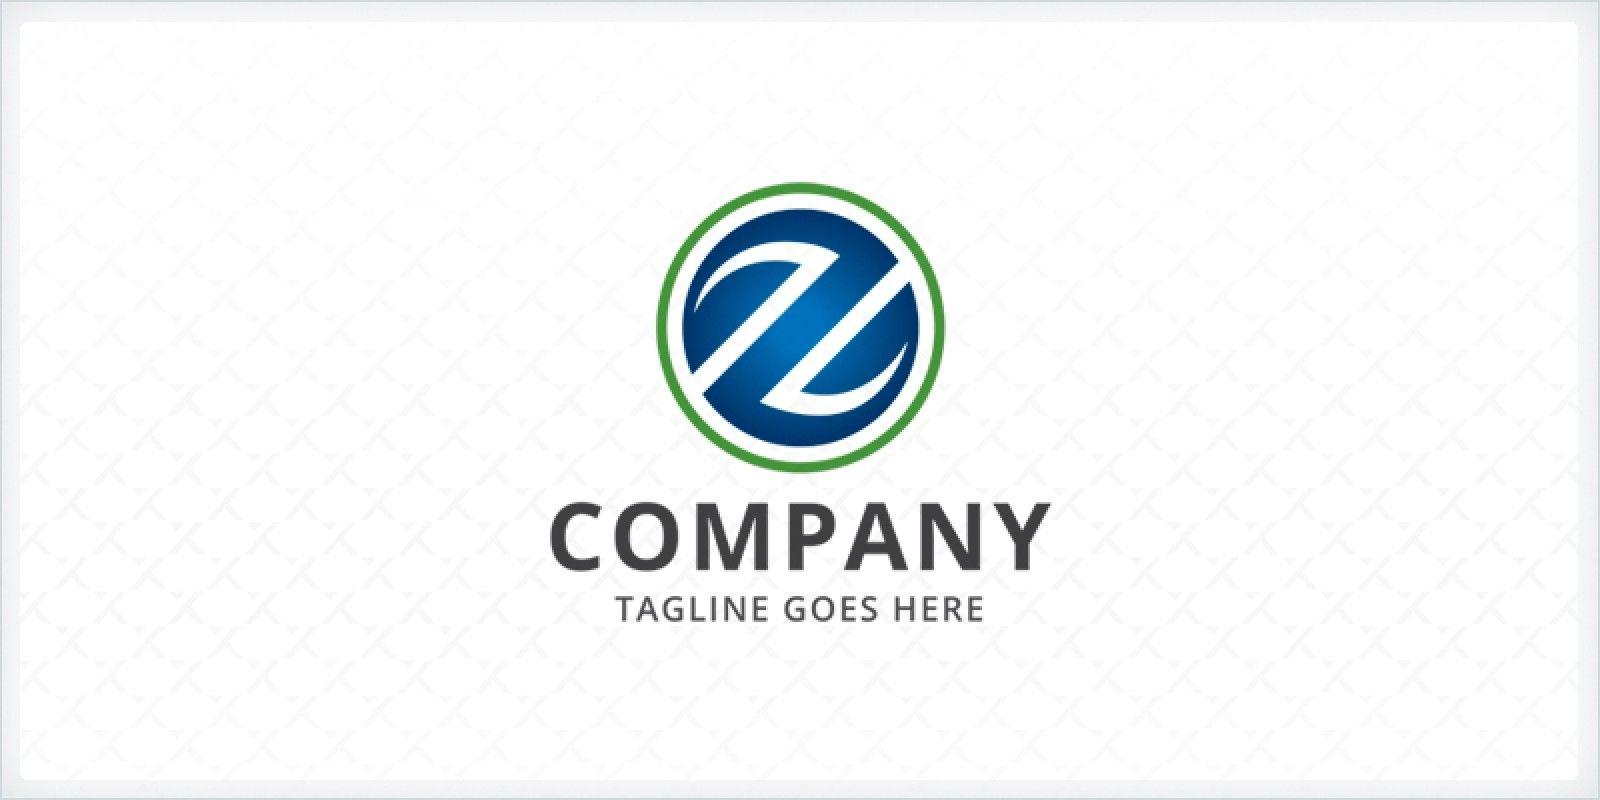 Z Company Logo - Letter Z